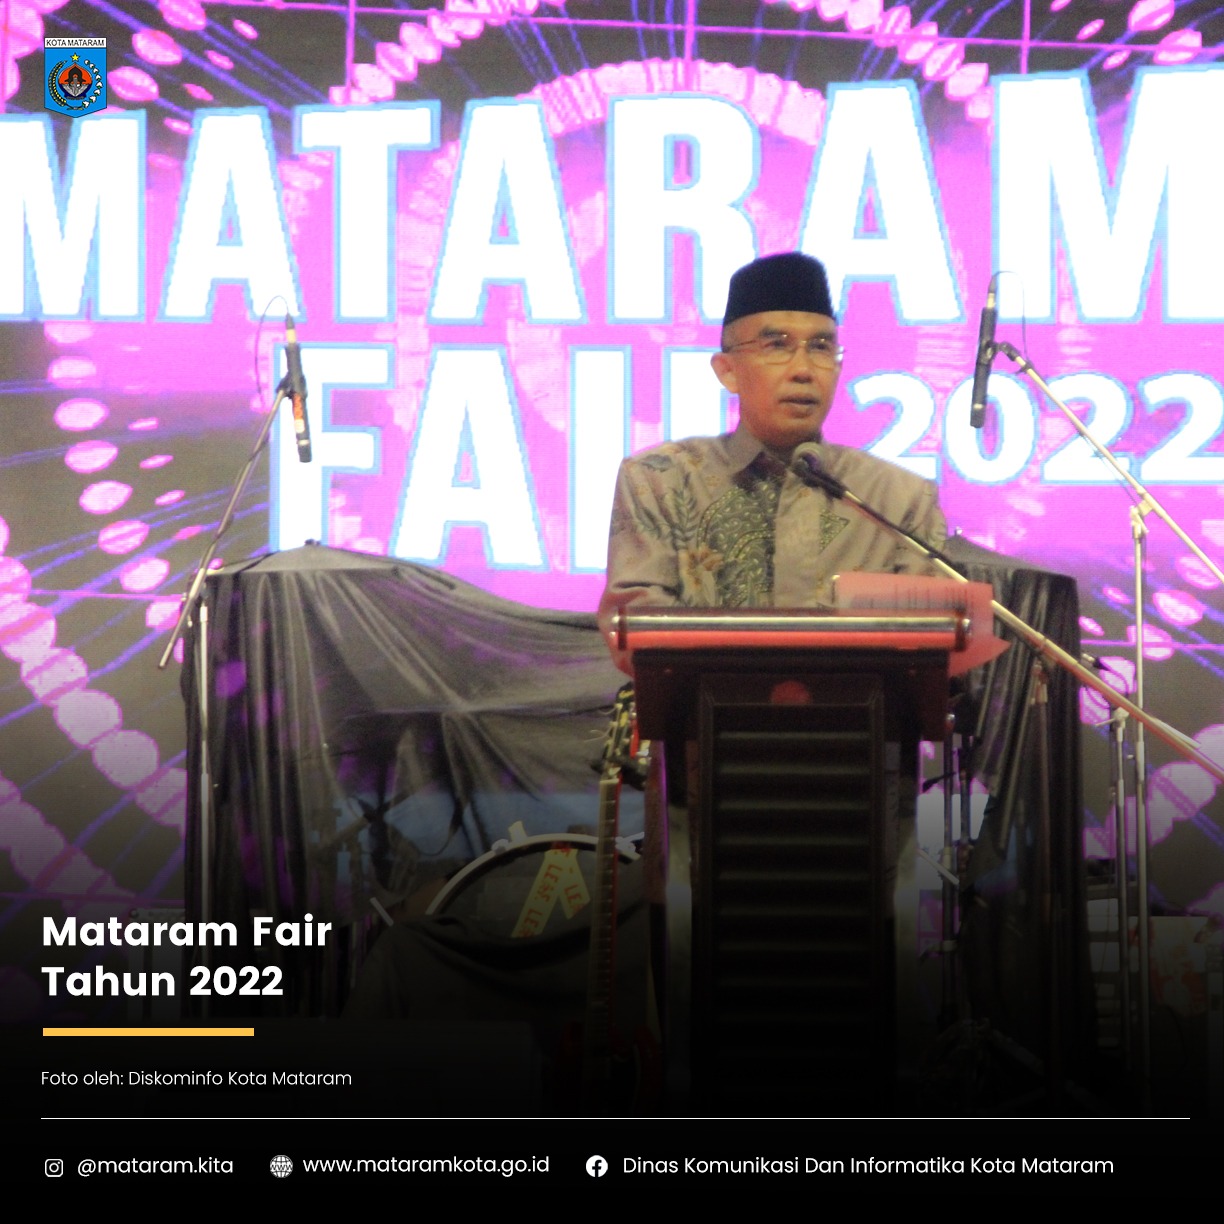 Mataram Fair Tahun 2022